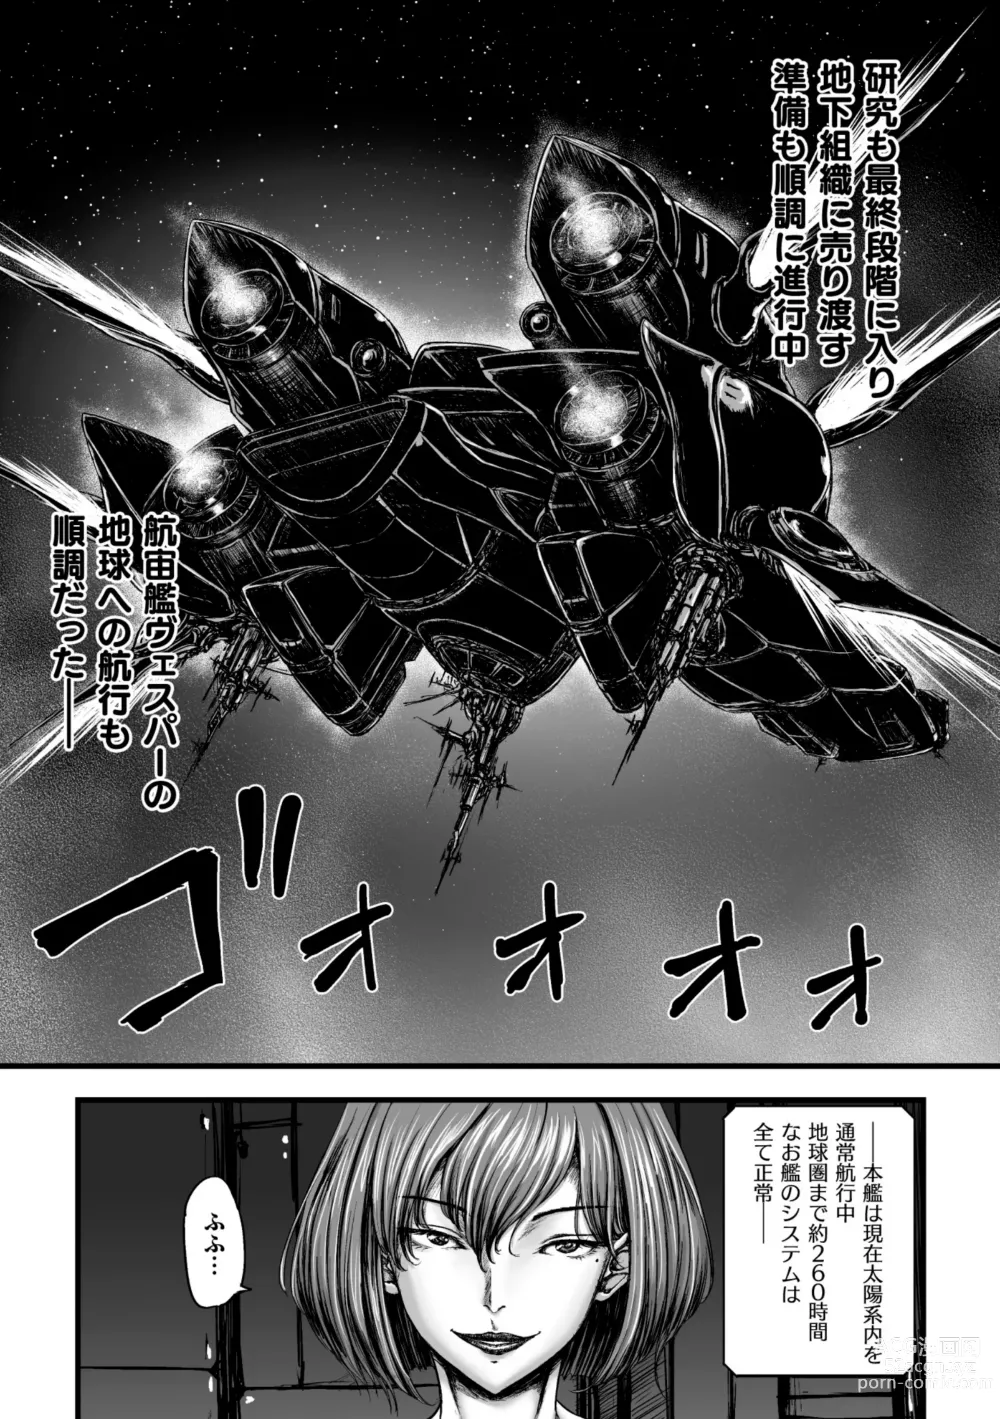 Page 5 of manga Kangoku Tentacle Battleship Episode 3